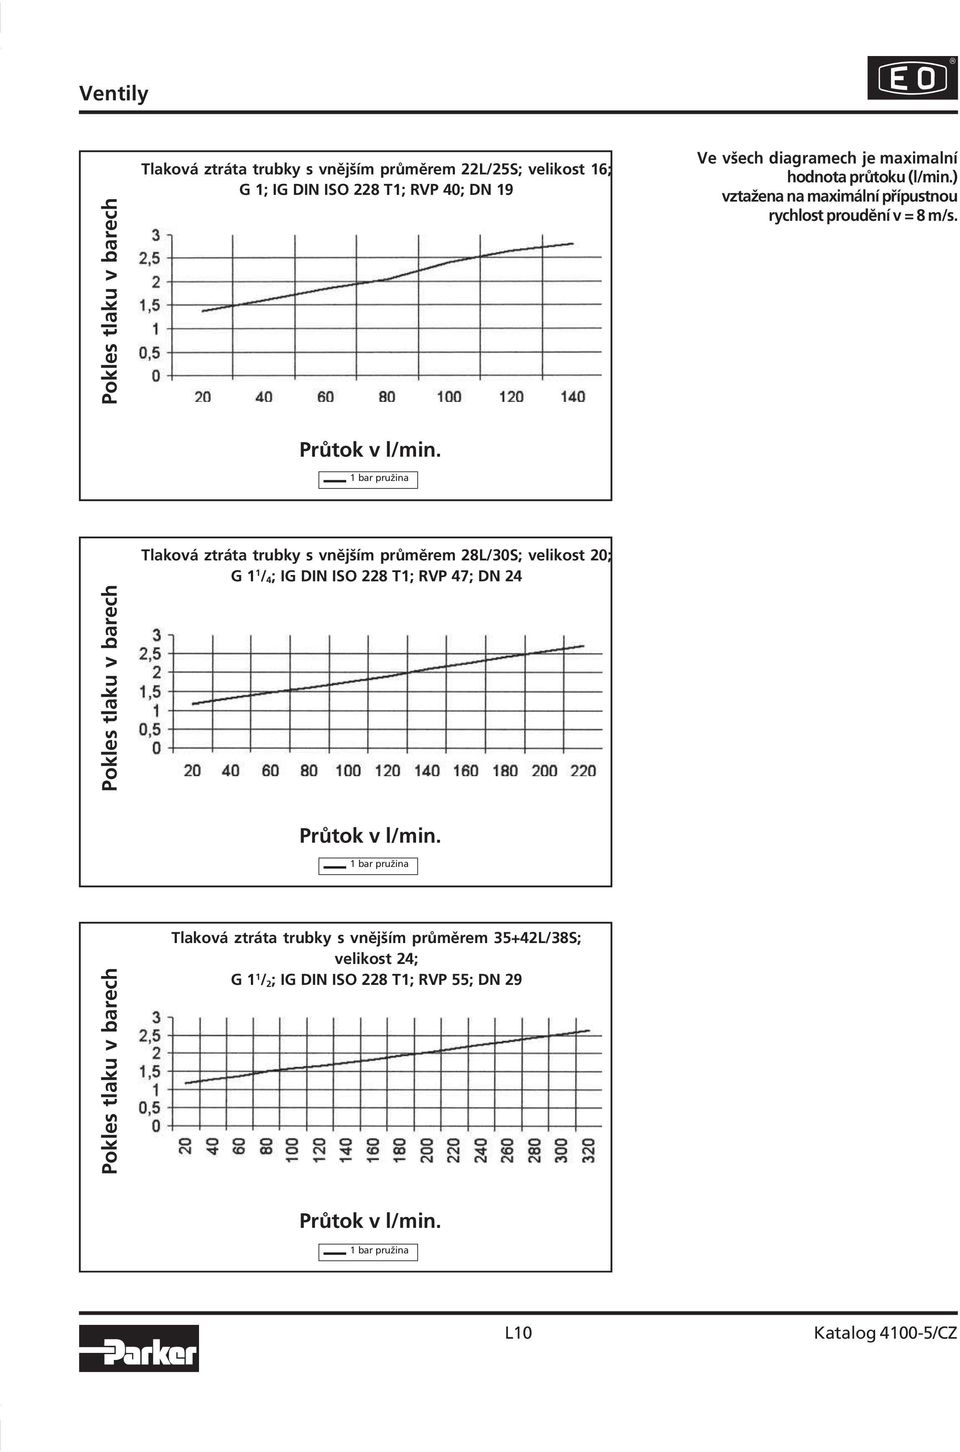 1 bar pružina Pokles tlaku v barech Tlaková ztráta trubky s vnějším průměrem 28L/30S; velikost 20; G 1 1 / 4 ; IG DIN ISO 228 T1; RVP 47; DN 24